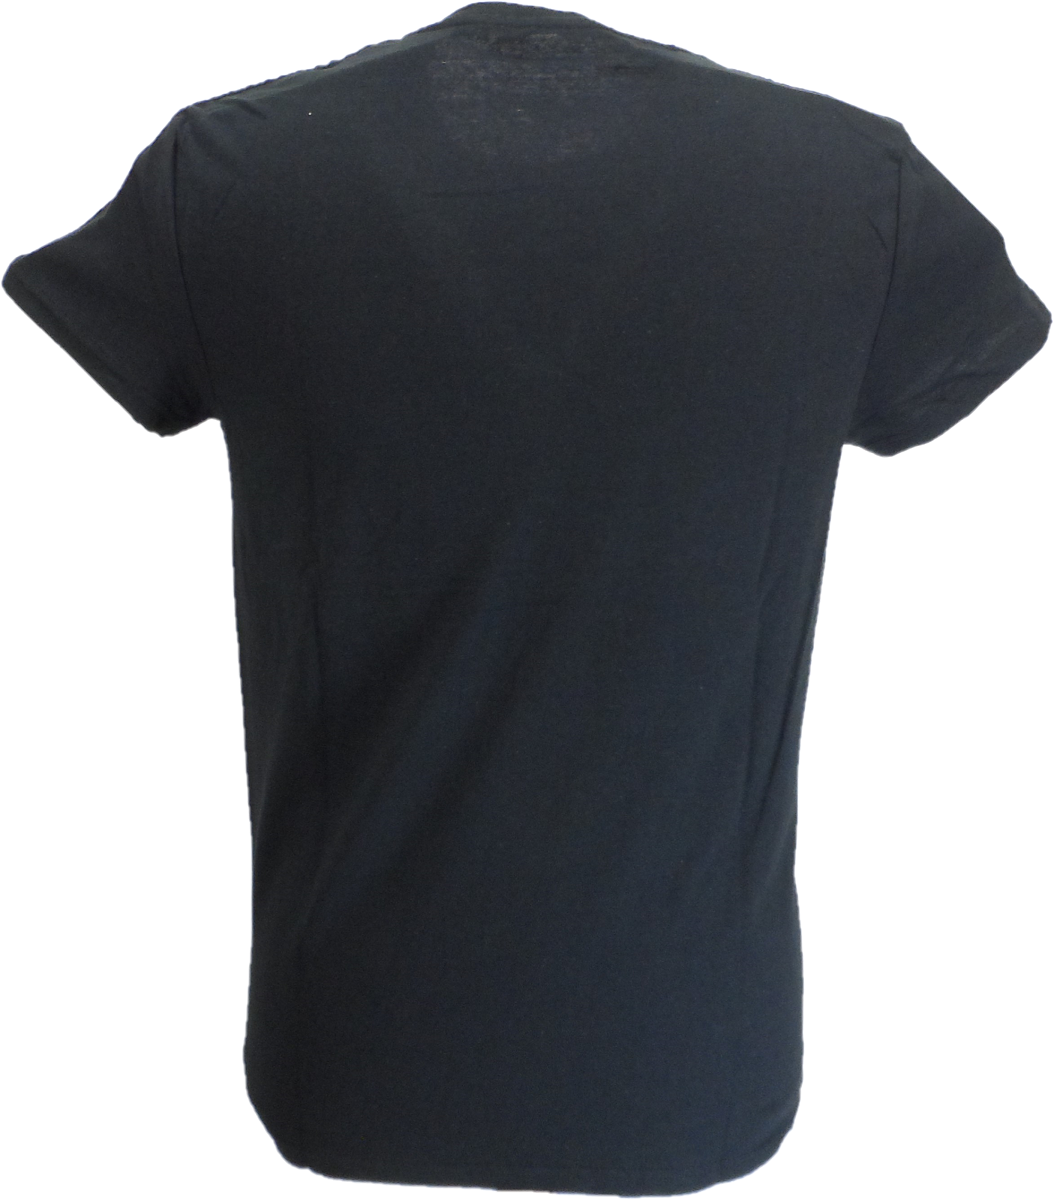 T-shirt noir officiel pour hommes, pistolets sexuels, sid pic